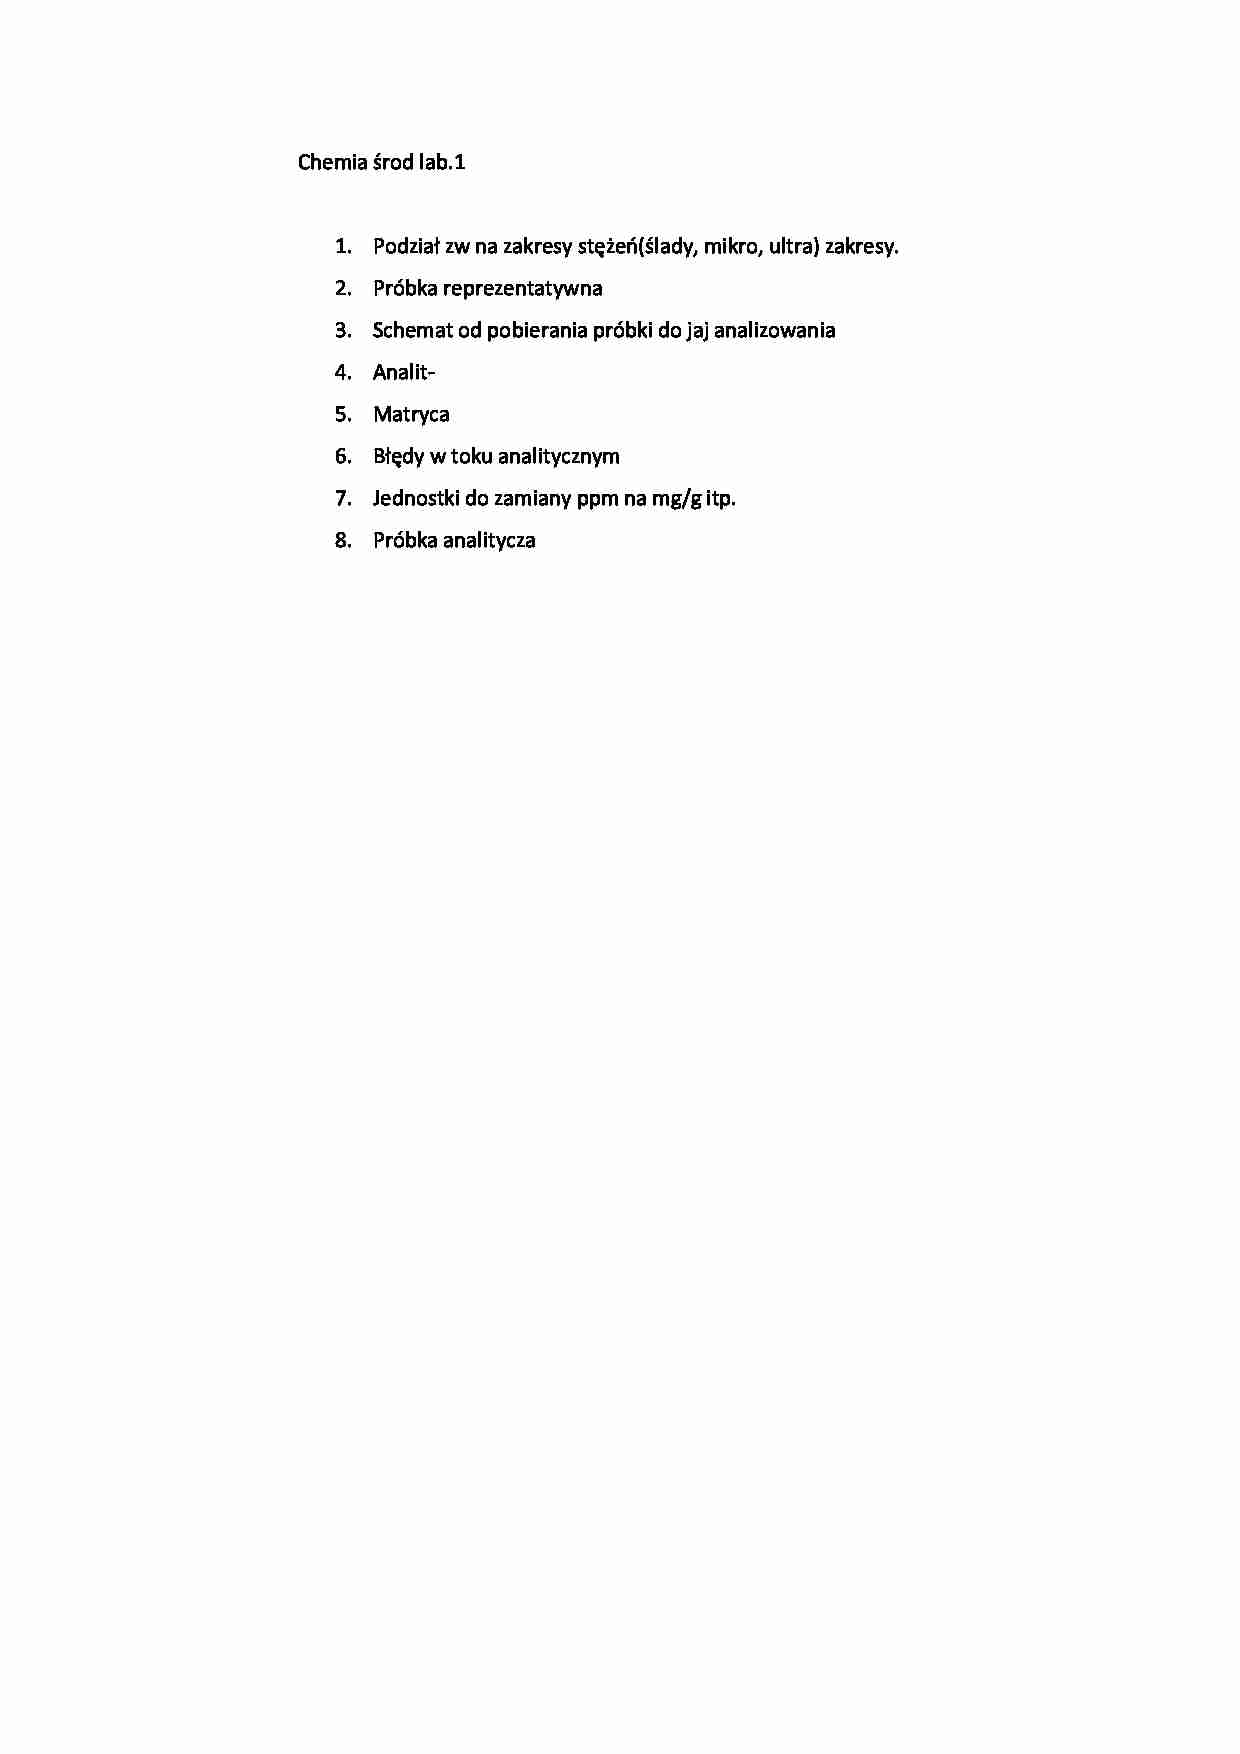 Etapy procesu analitycznego - strona 1